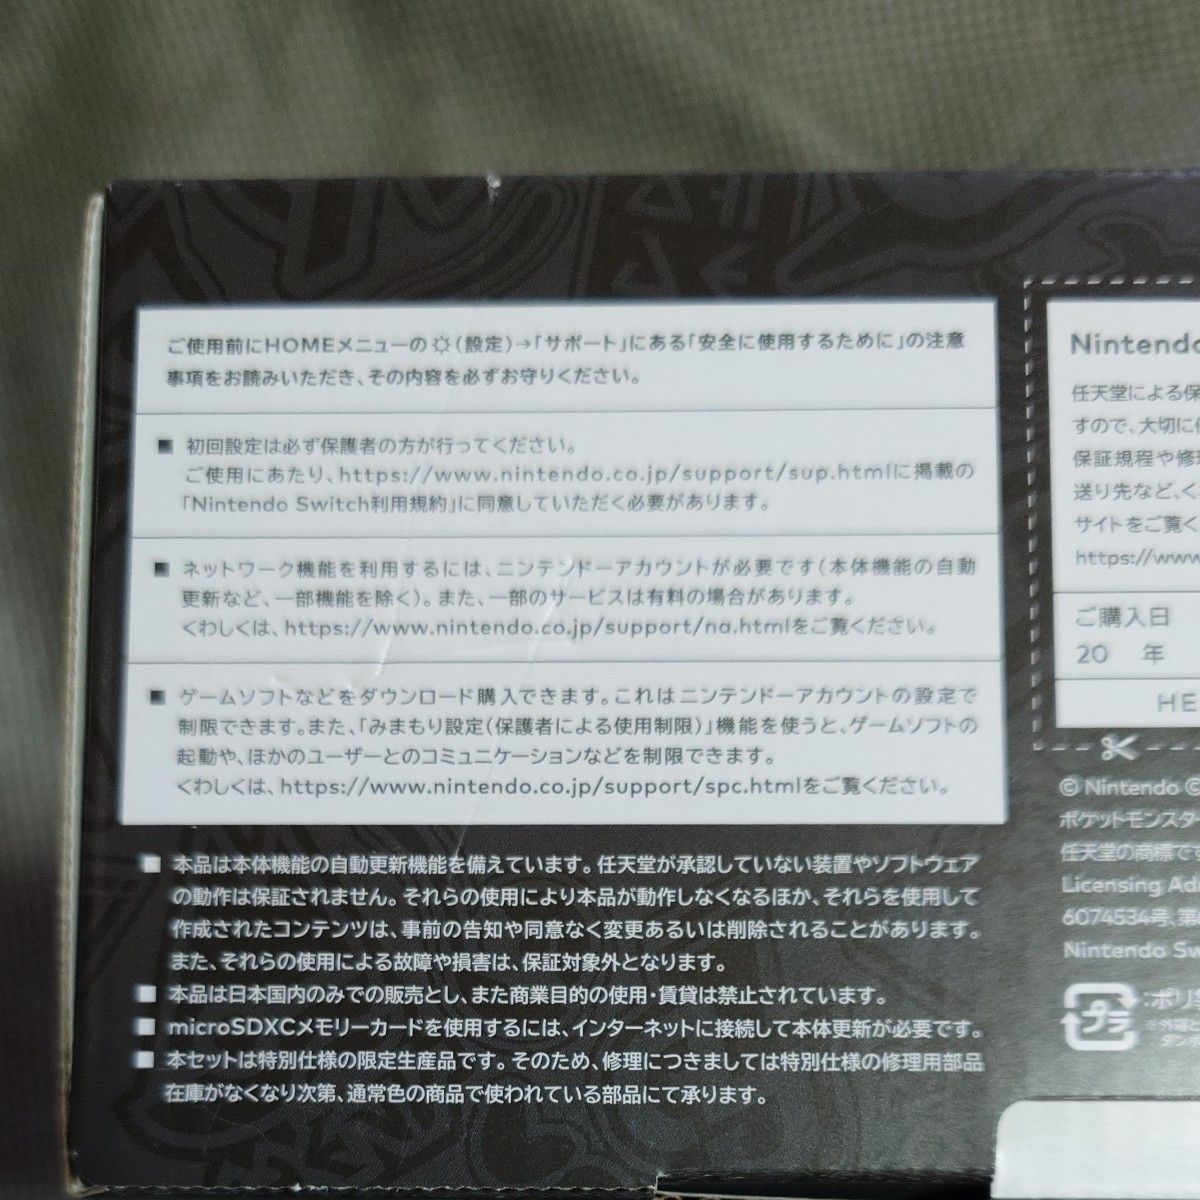 Nintendo Switch 有機ELモデル スカーレットバイオレットエディション